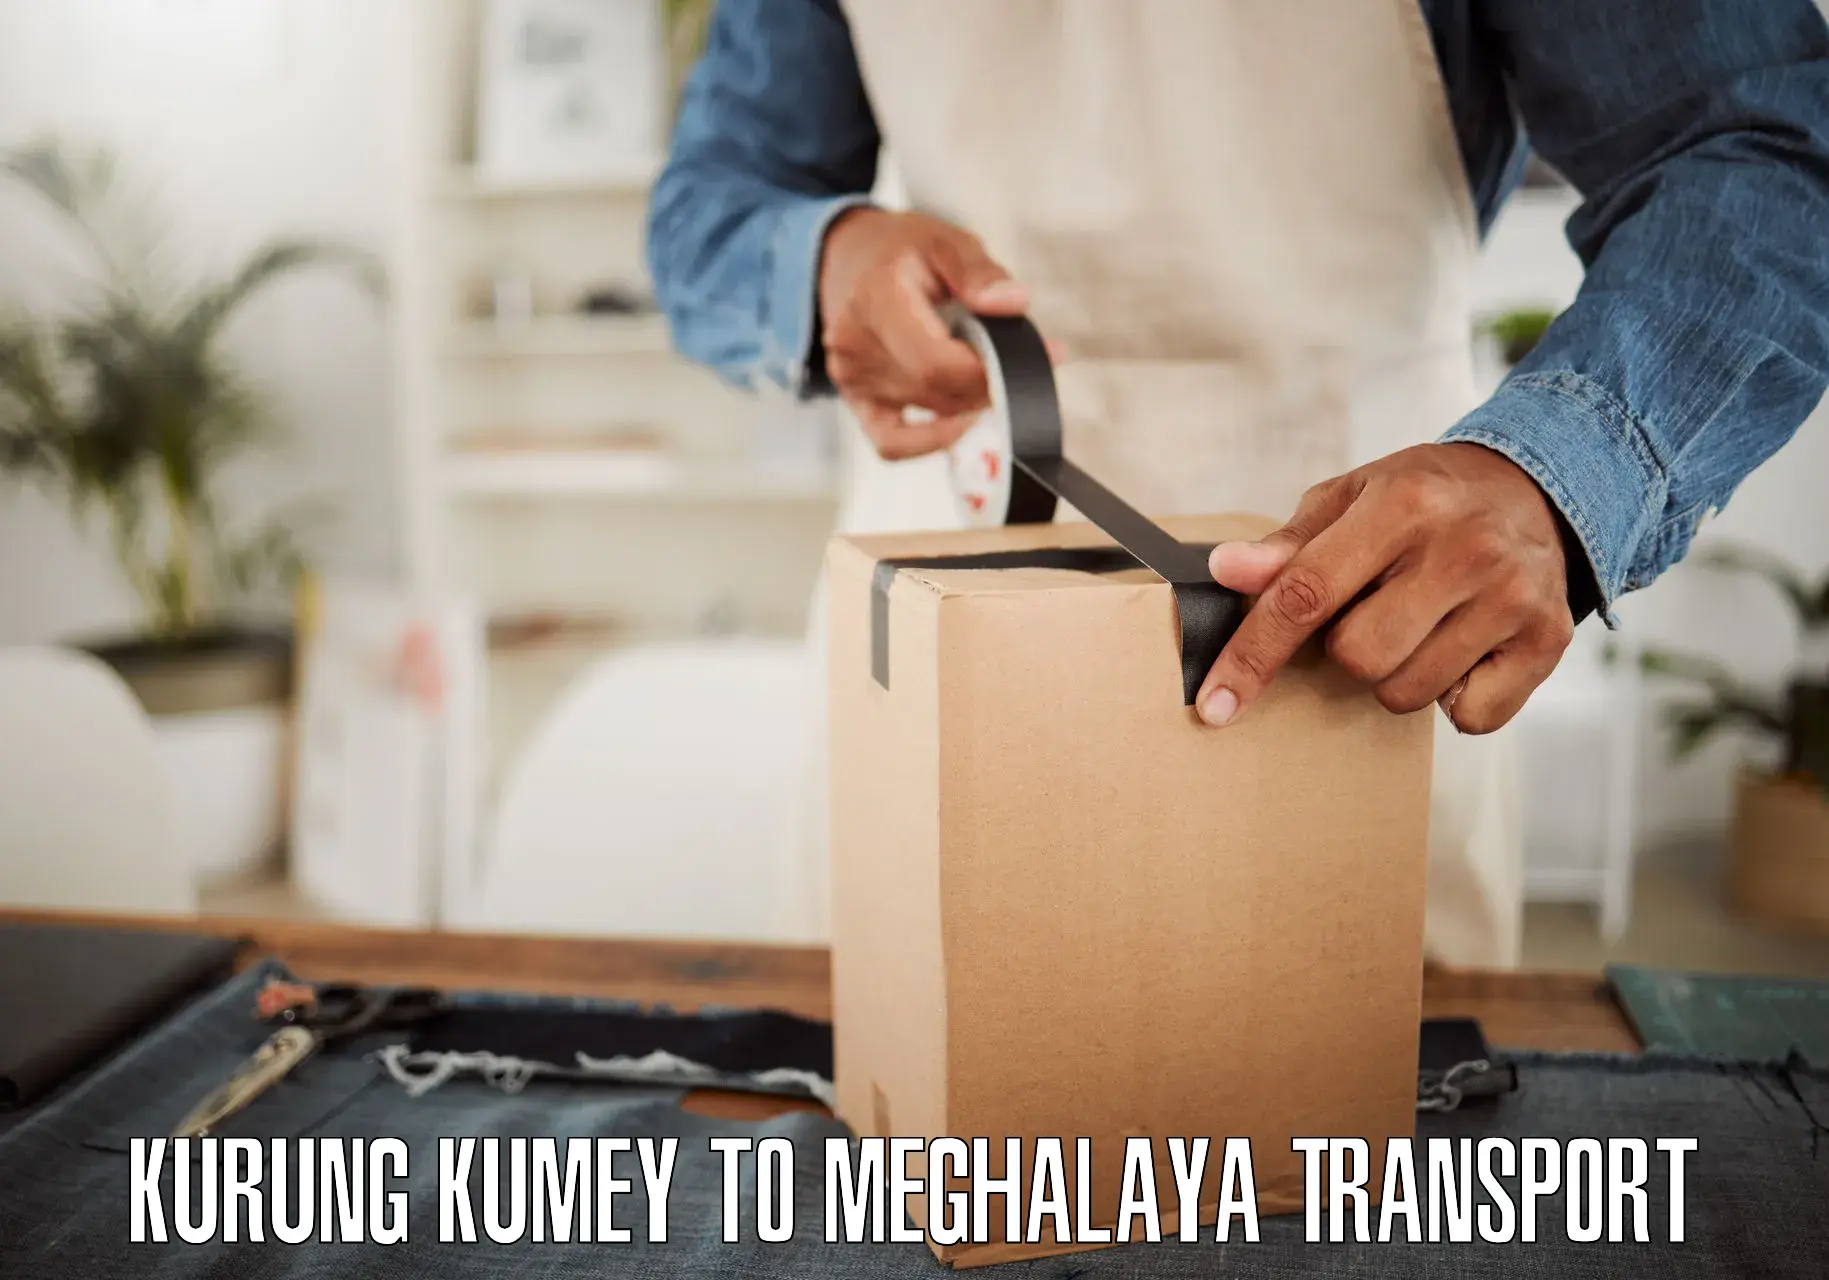 Transport in sharing Kurung Kumey to South Garo Hills